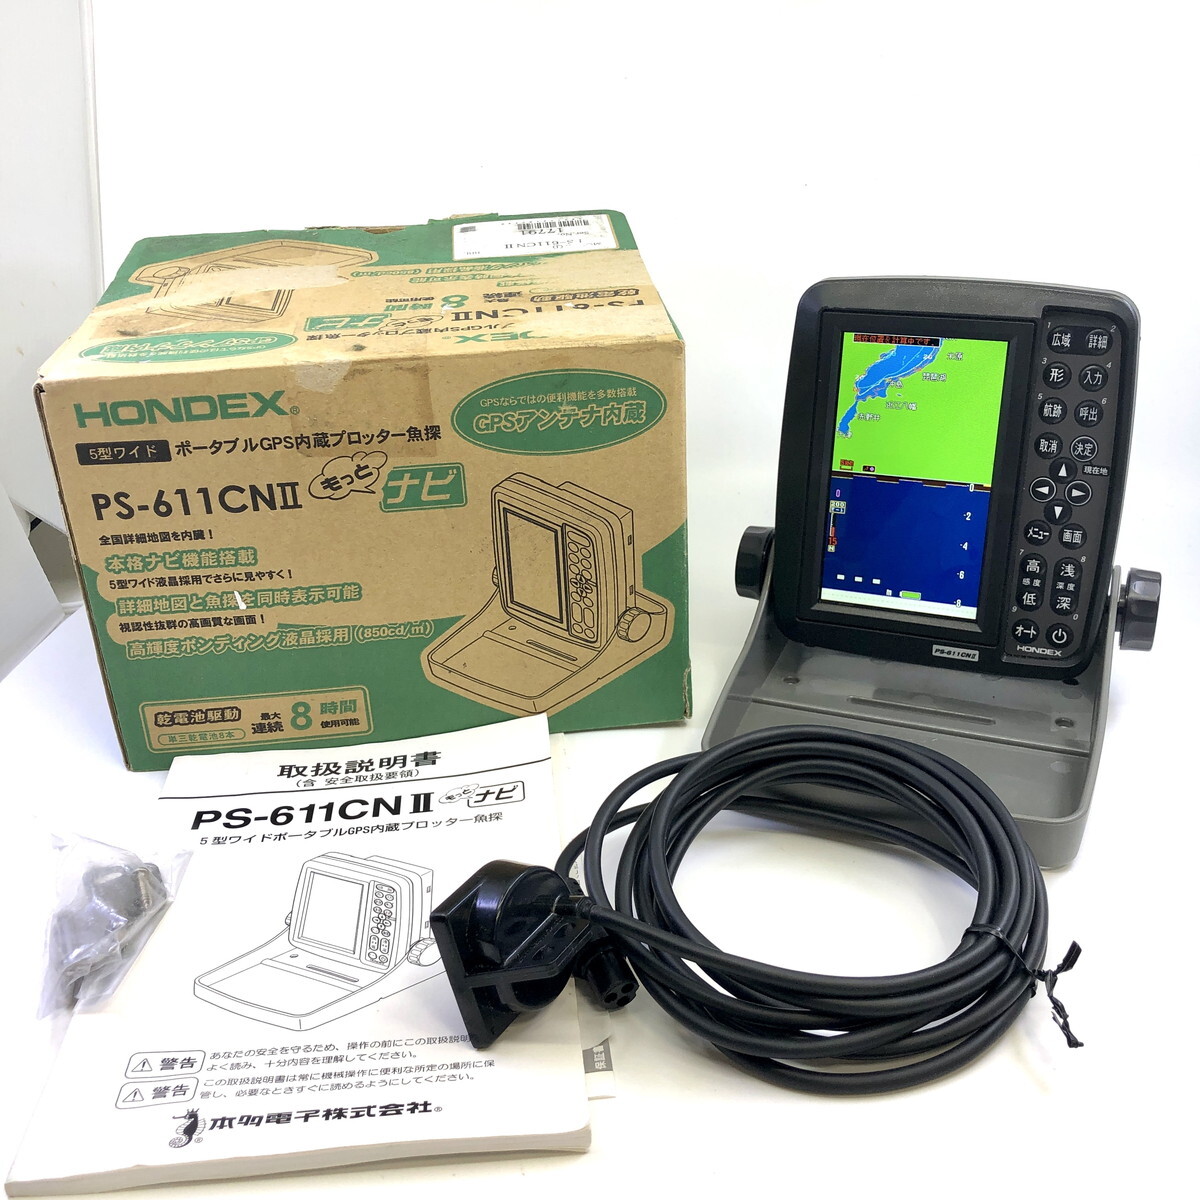  б/у ho n Dex PS-611CNⅡ портативный GPS встроенный плоттер Fish finder HONDEX 5 широкий PS-611CN2(Y0421_1)